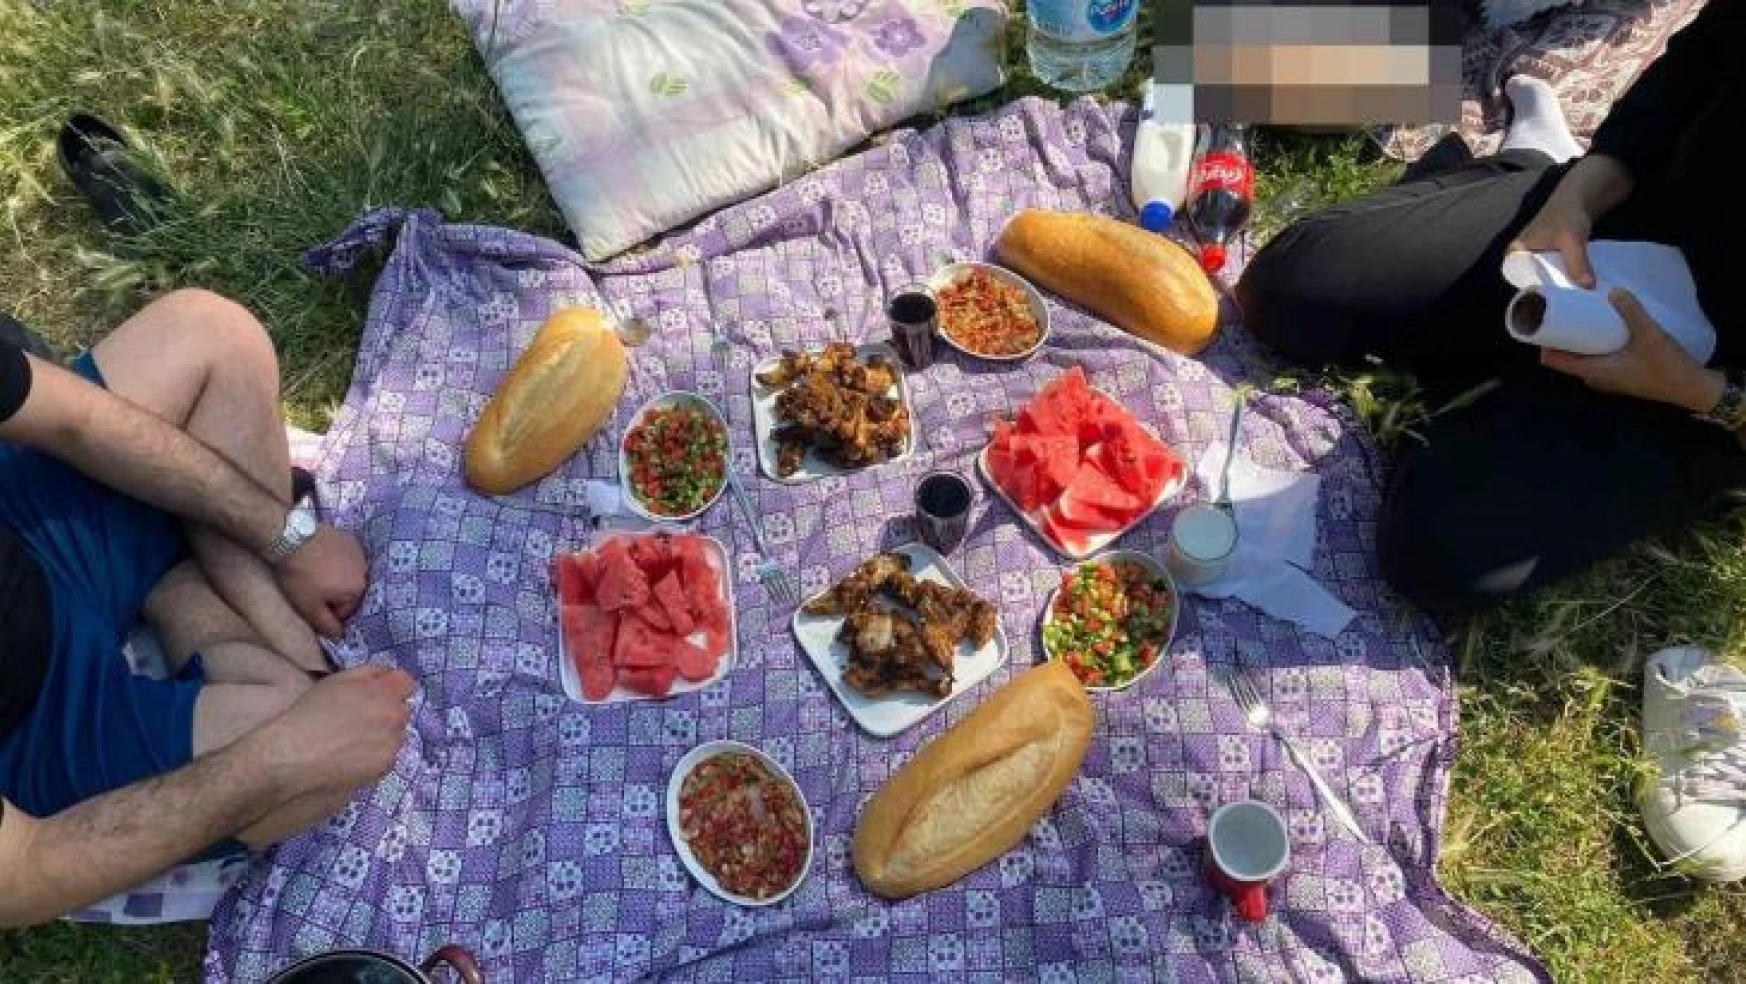 Piknikte ekmeği böldüklerinde hayatlarının şokunu yaşadılar